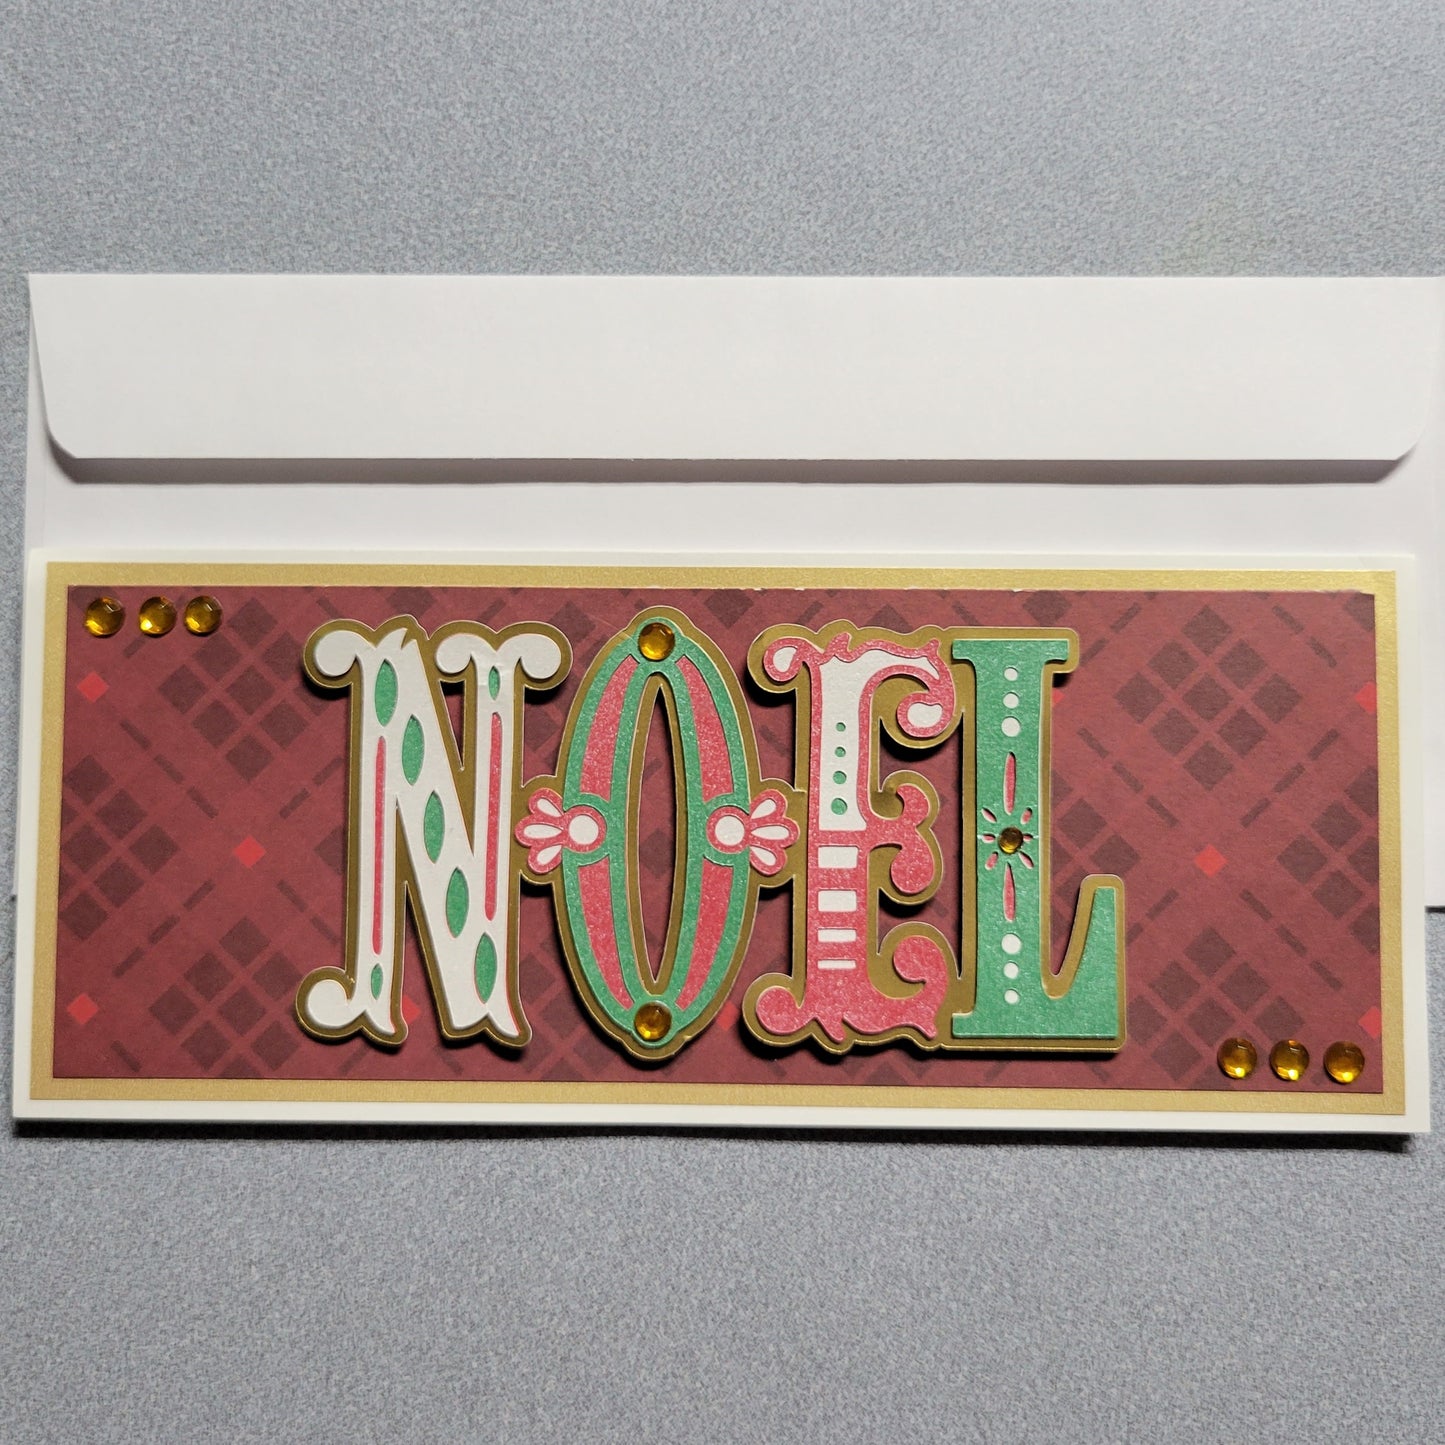 NOEL Christmas Card